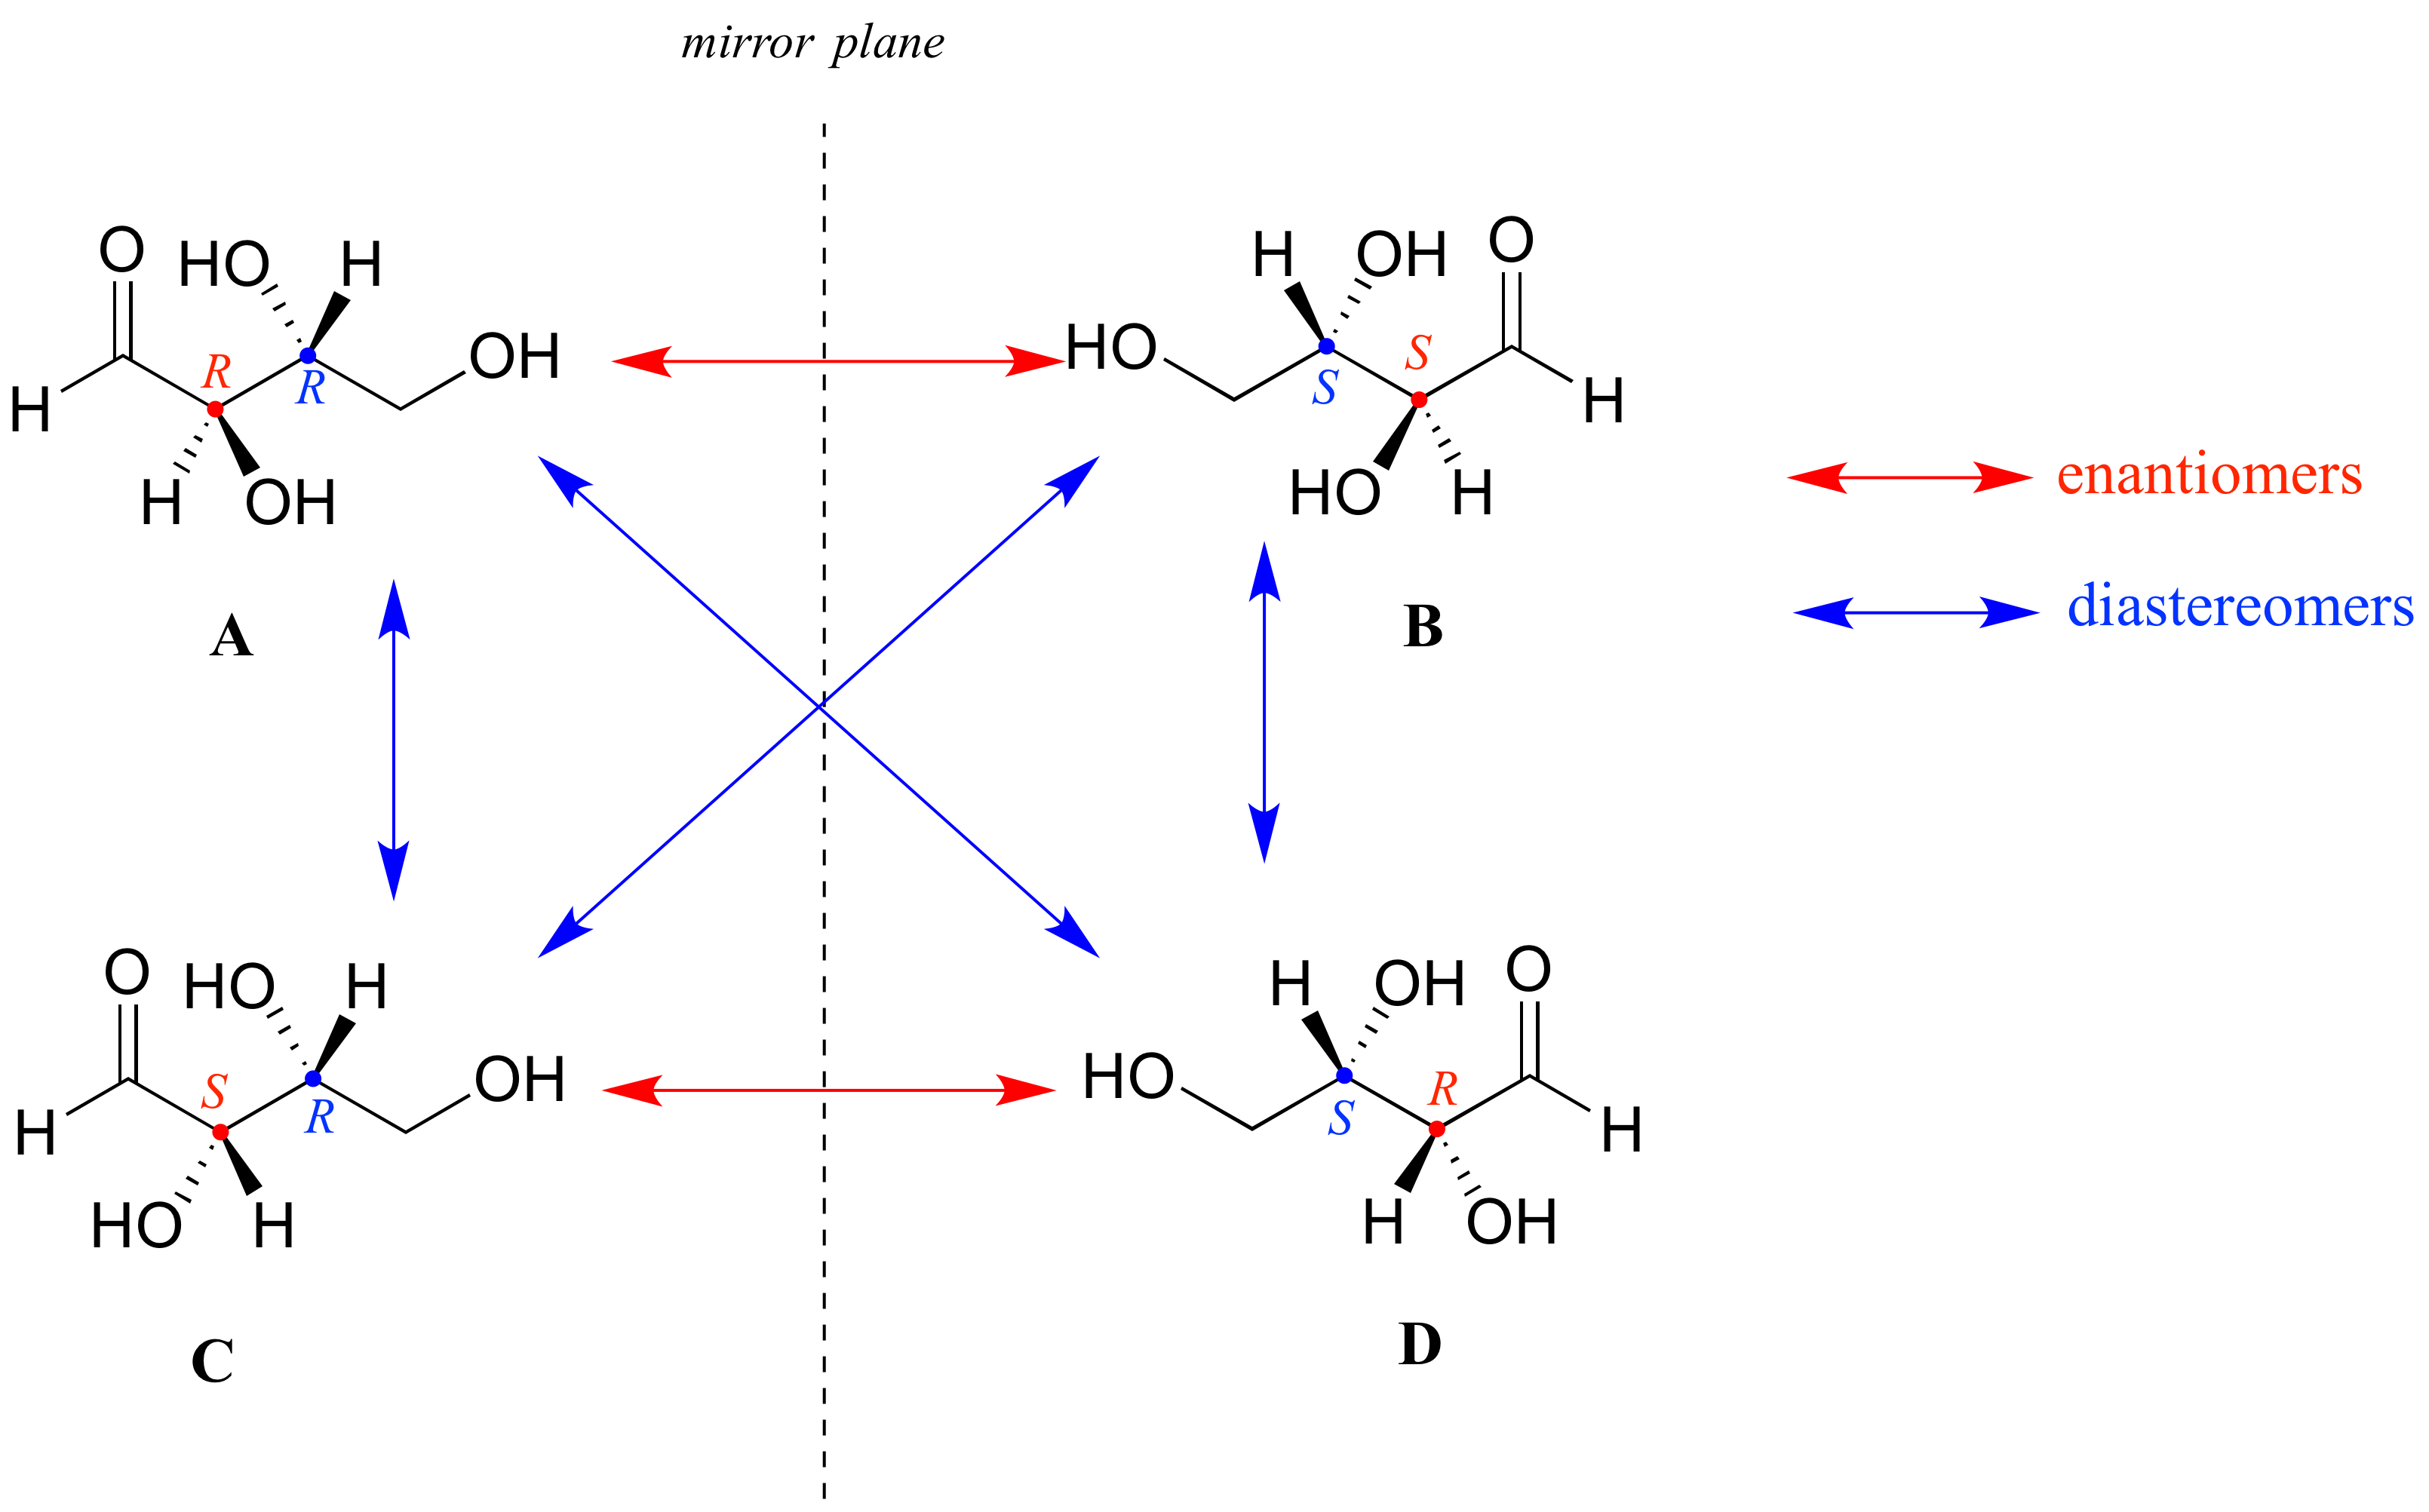 Cuatro moléculas con dos centros quirales. A y C en el lado izquierdo del plano del espejo y sus imágenes especulares en el lado derecho. Flechas rojas para enantiómeros y flechas azules para diastereómeros. La molécula A tiene dos centros R, B tiene dos centros S, C y D tienen un S y uno R. A y B son enantiómeros y C y D son enantiómeros. A y C, A y D, B y D, B y C son diastereómeros.